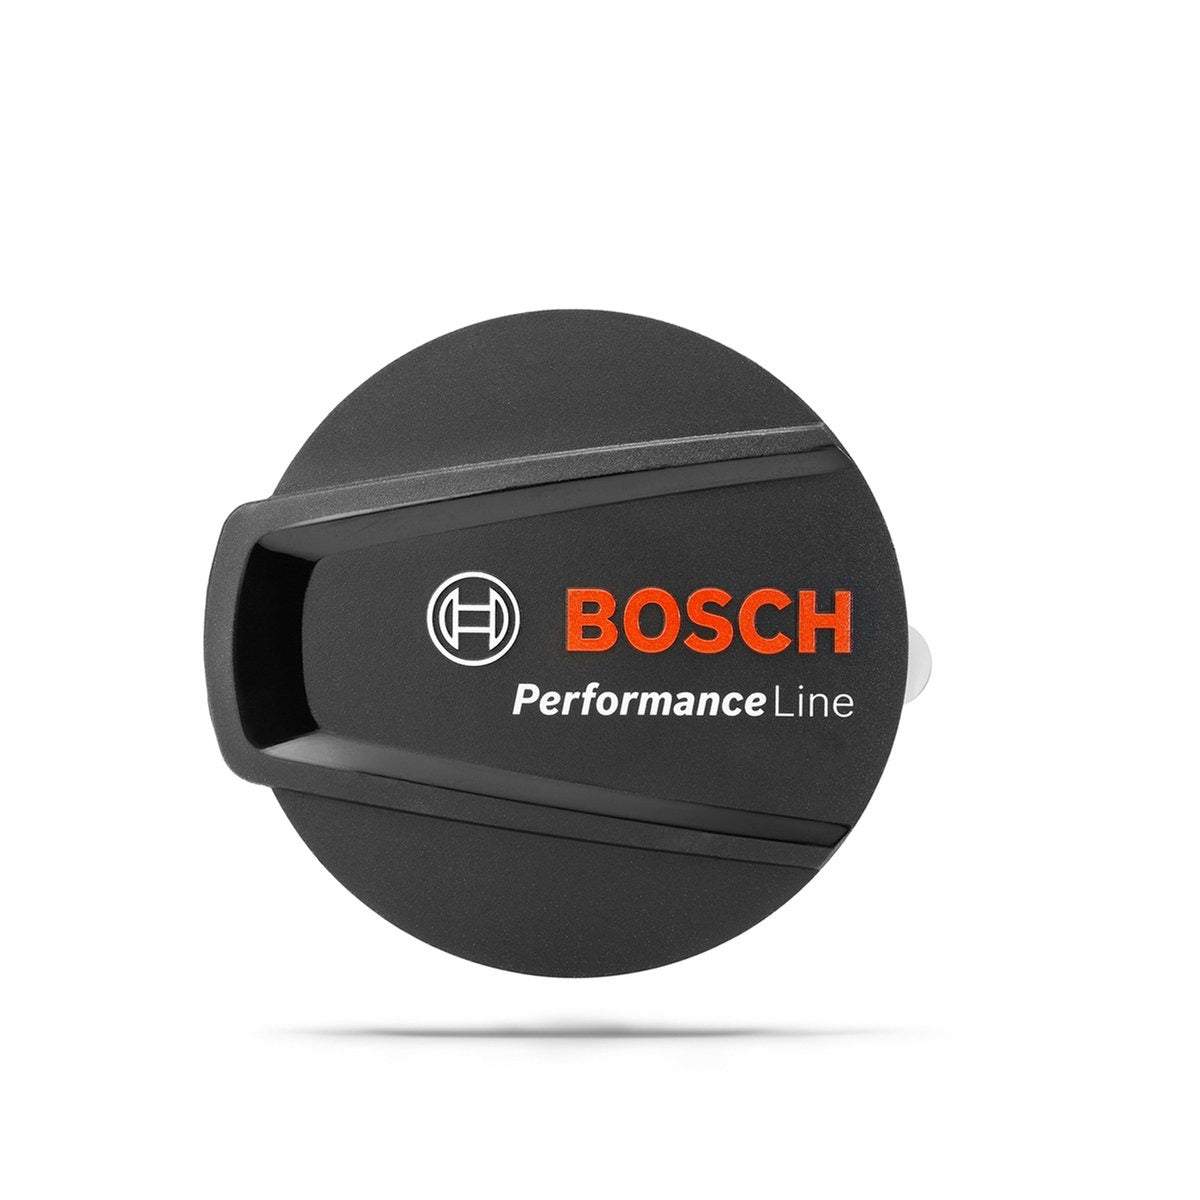 Bosch eBike Performance Line Logo Cover - BDU336Y